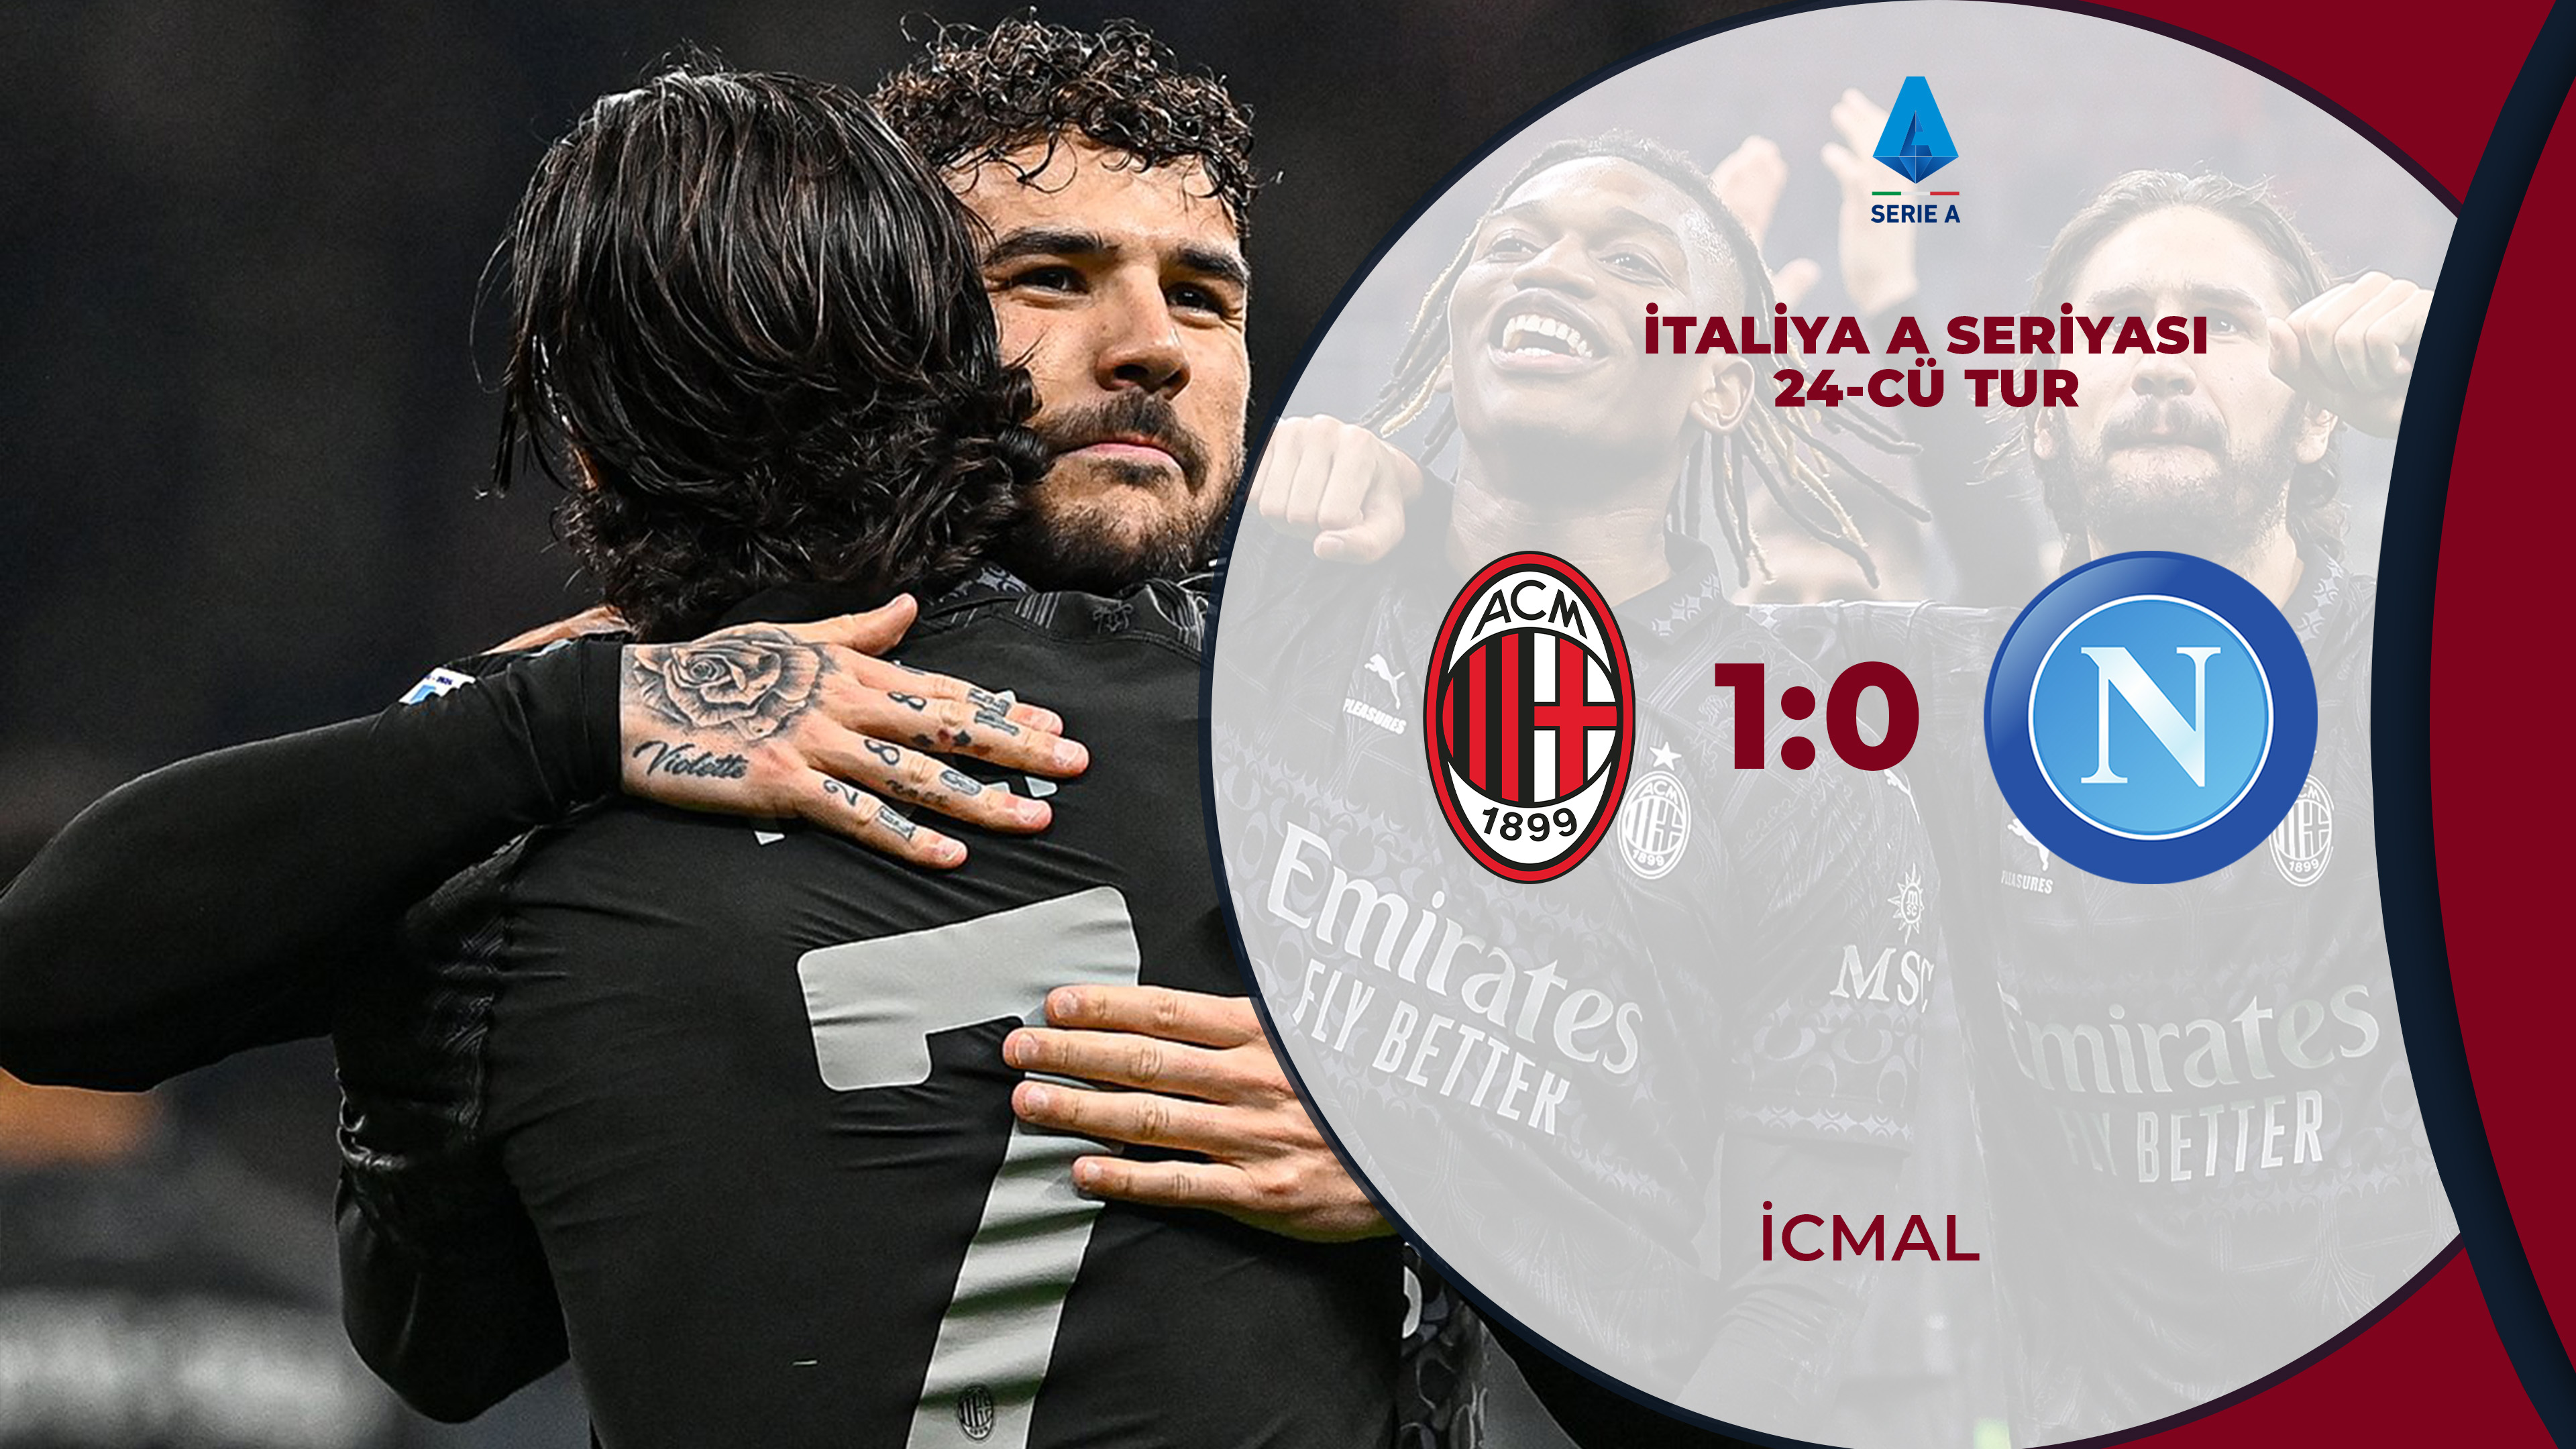 Milan 1:0 Napoli | İtaliya A Seriyası, 24-cü tur | İCMAL